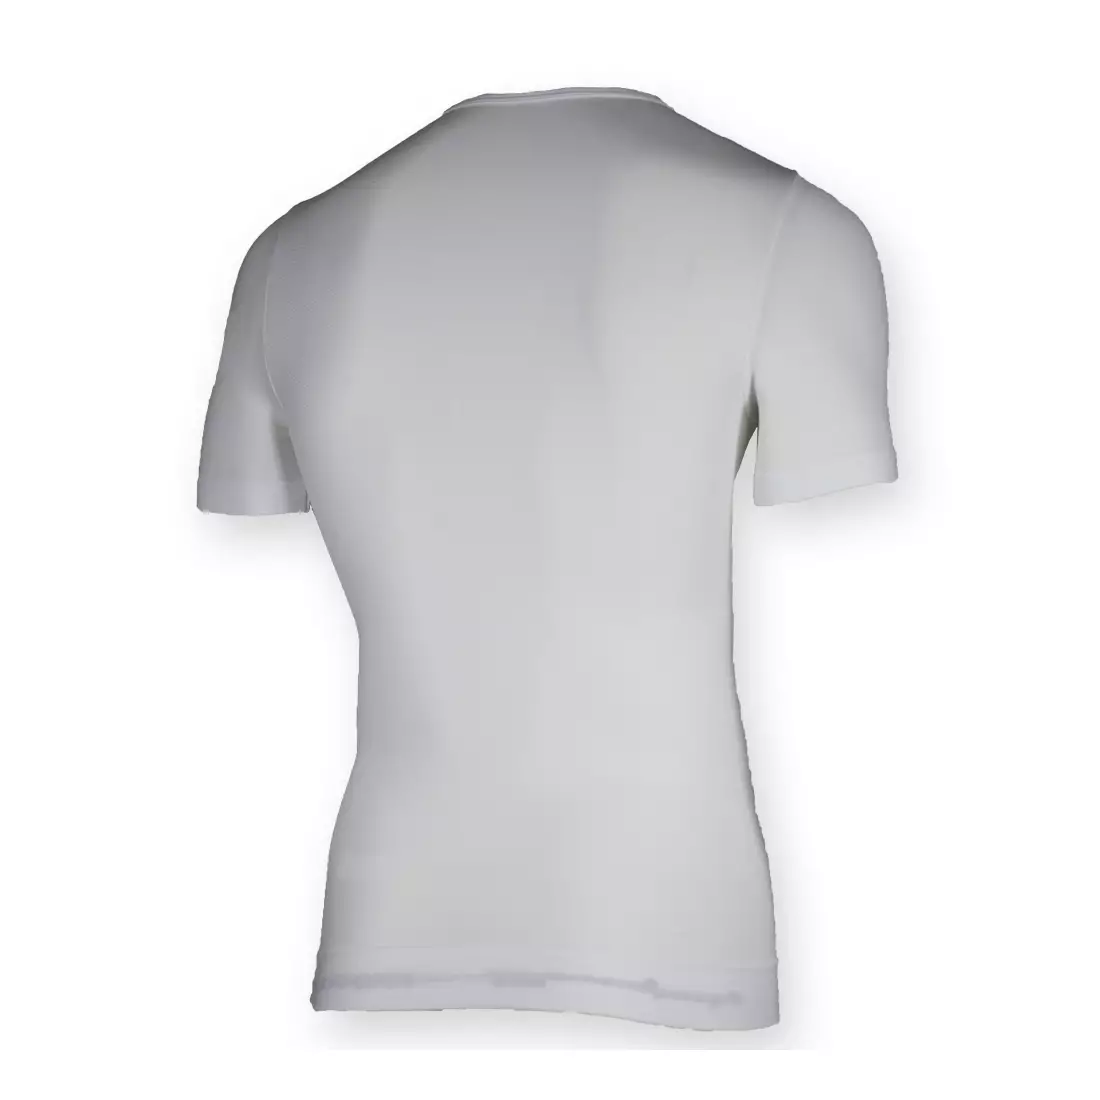 ROGELLI CHASE 070.003 - Thermounterwäsche - Herren-T-Shirt - Farbe: Weiß